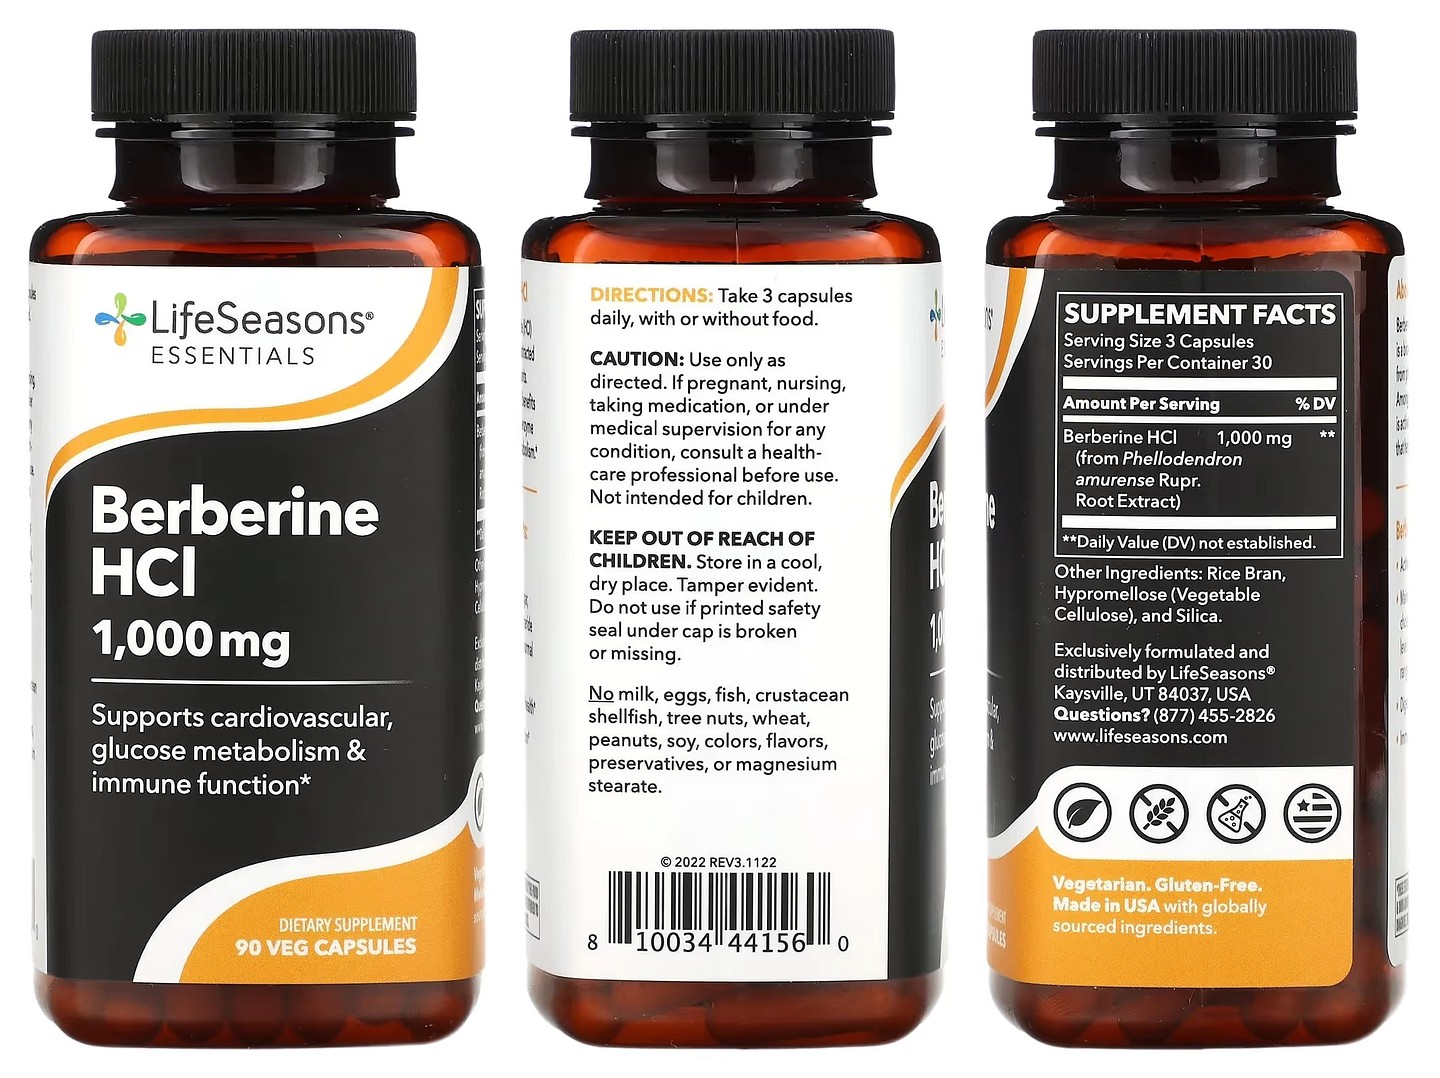 LifeSeasons, Berberine HCl packaging